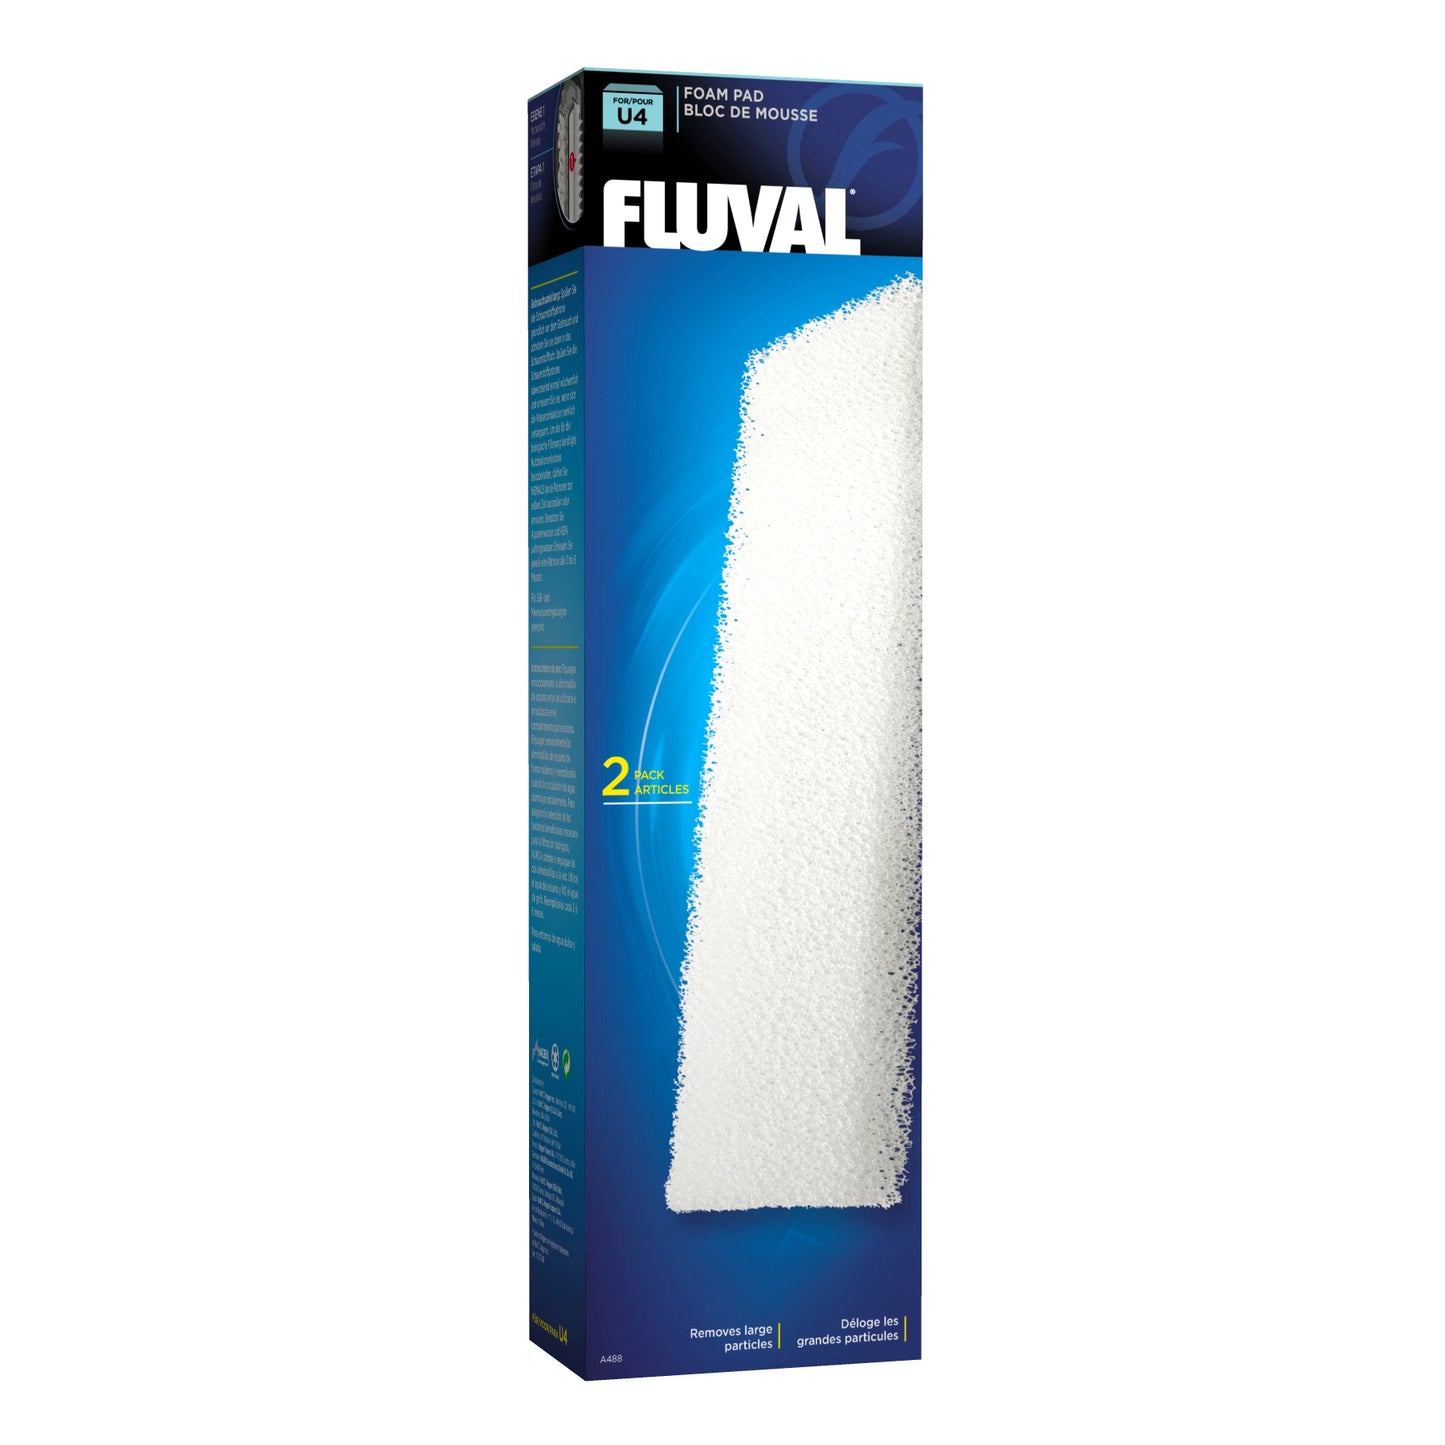 Fluval in U1/U2/U3/U4 in Foam Pad